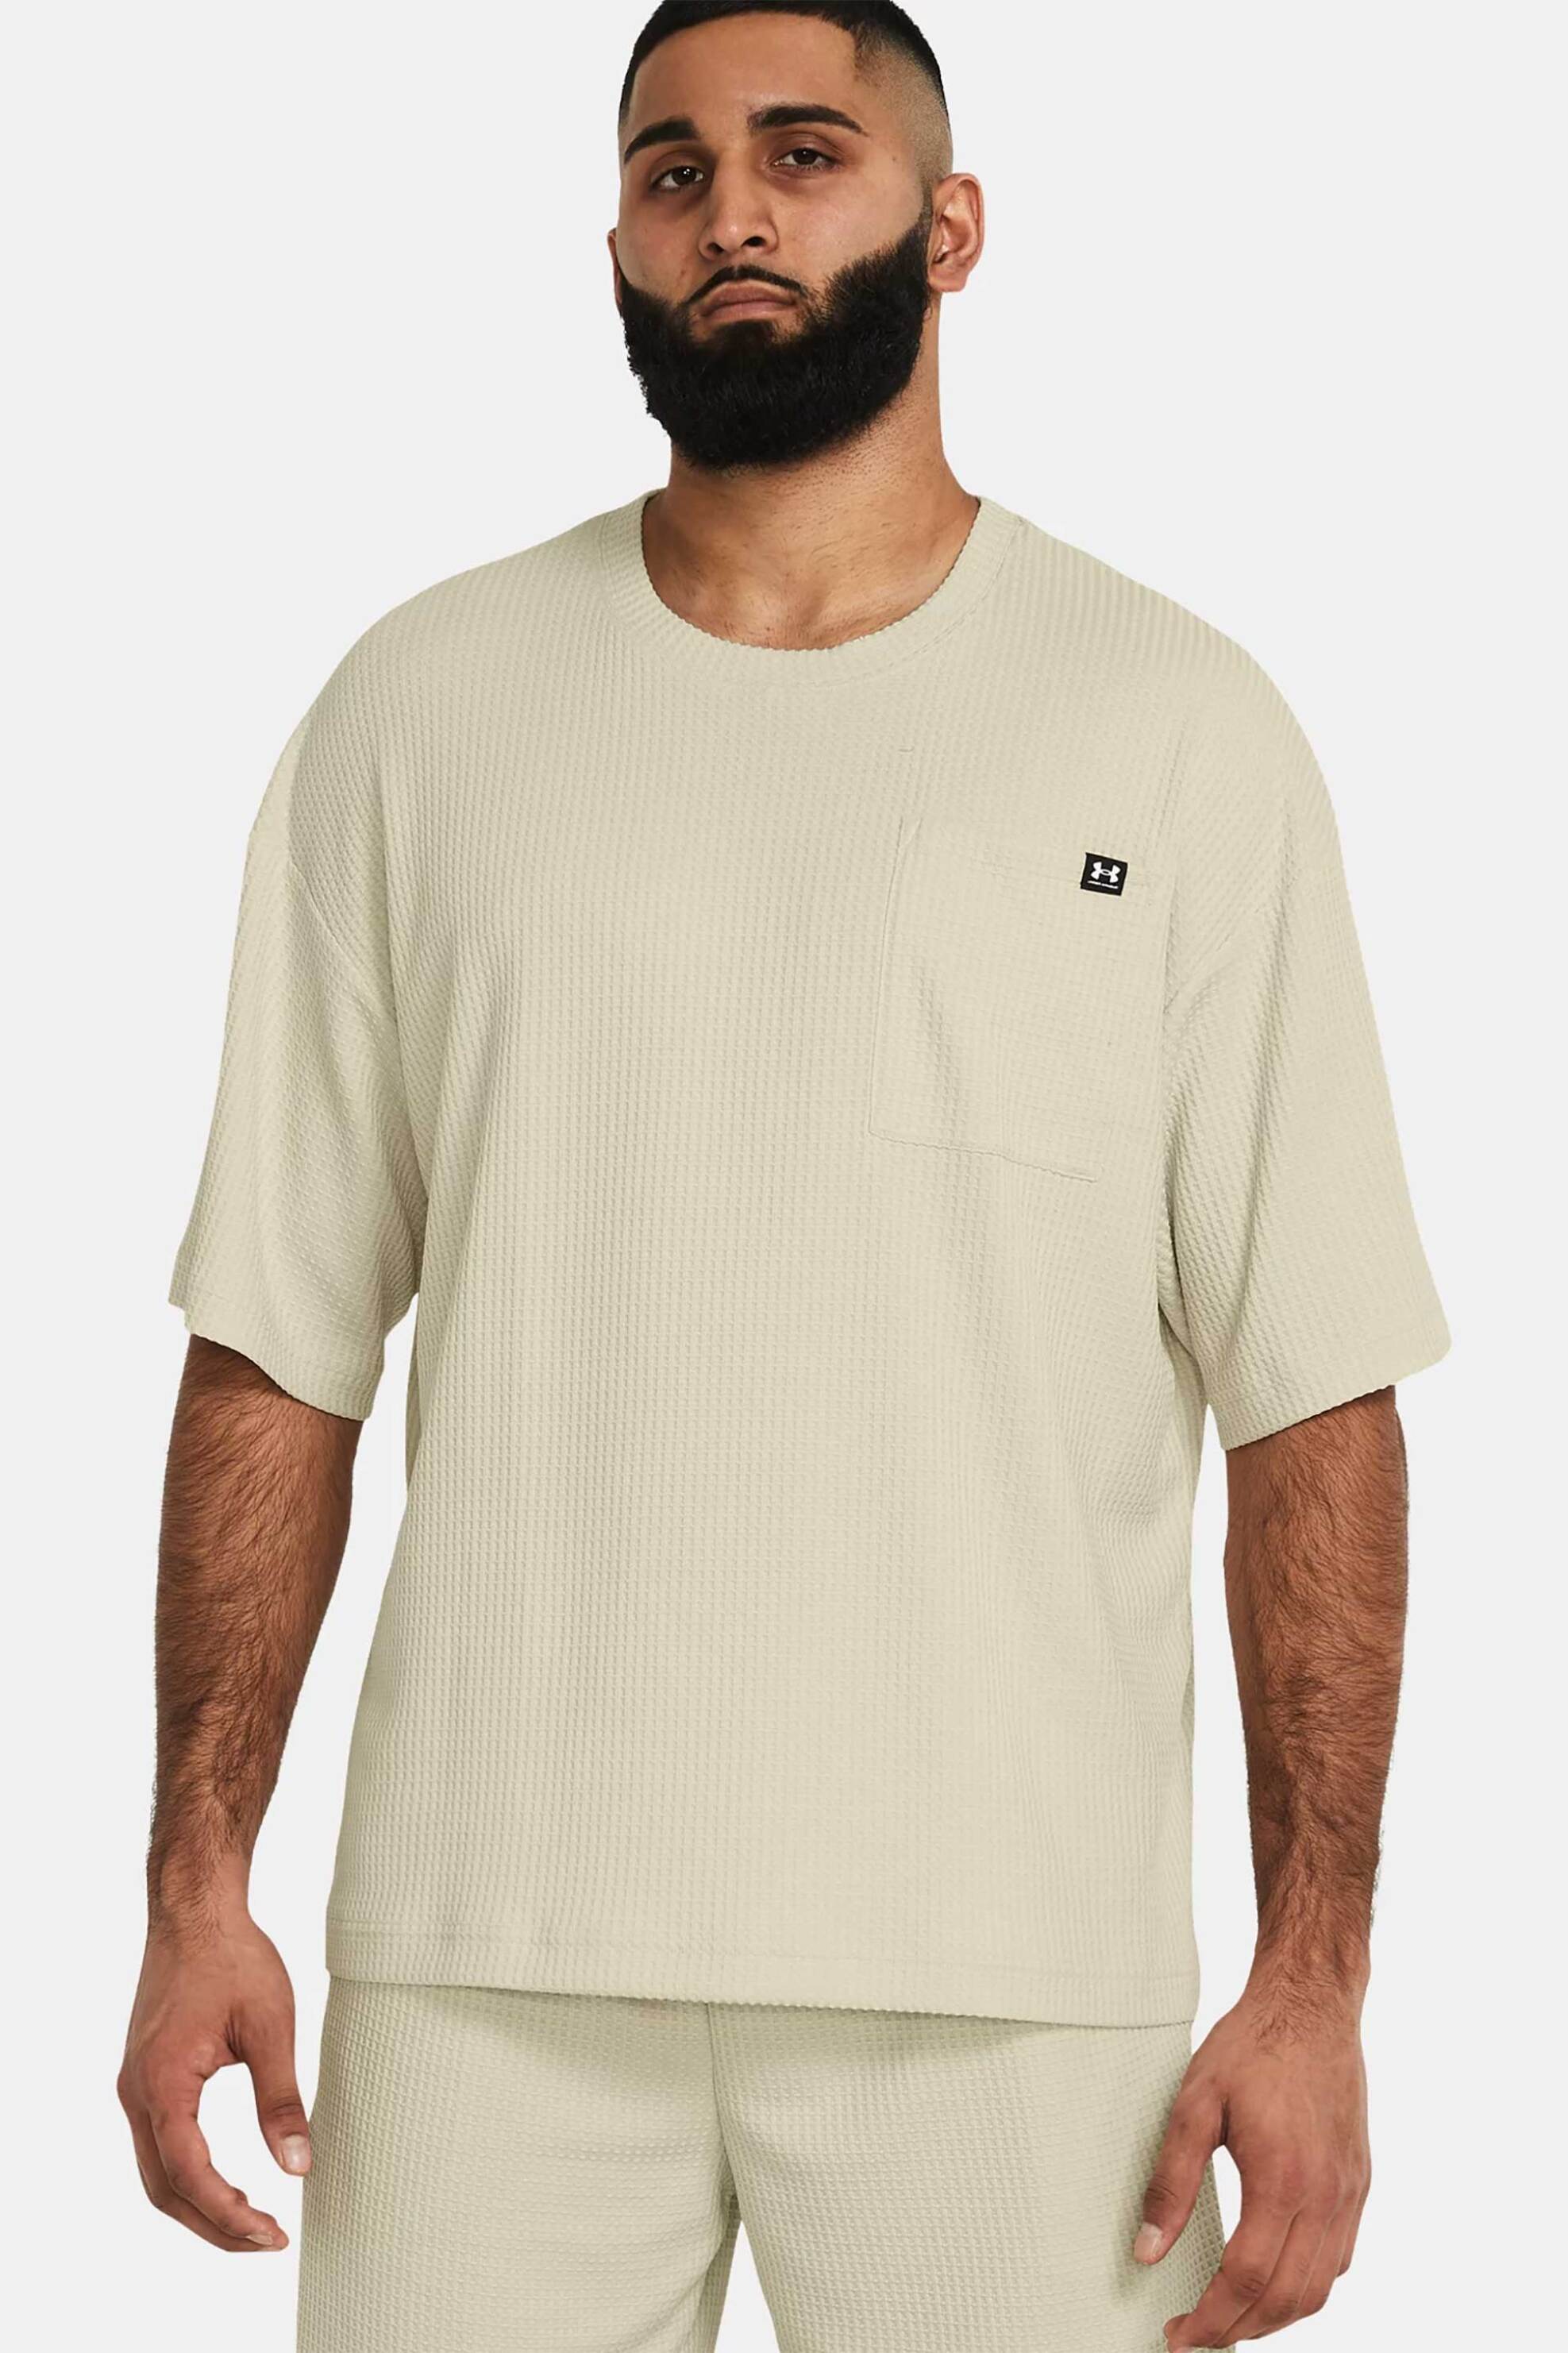 Ανδρική Μόδα > Ανδρικά Αθλητικά > Ανδρικά Αθλητικά Ρούχα > Αθλητικές Μπλούζες > Ανδρικά Αθλητικά T-Shirts Under Armour ανδρικό T-shirt "Rival Waffle" - 1383106 Εκρού